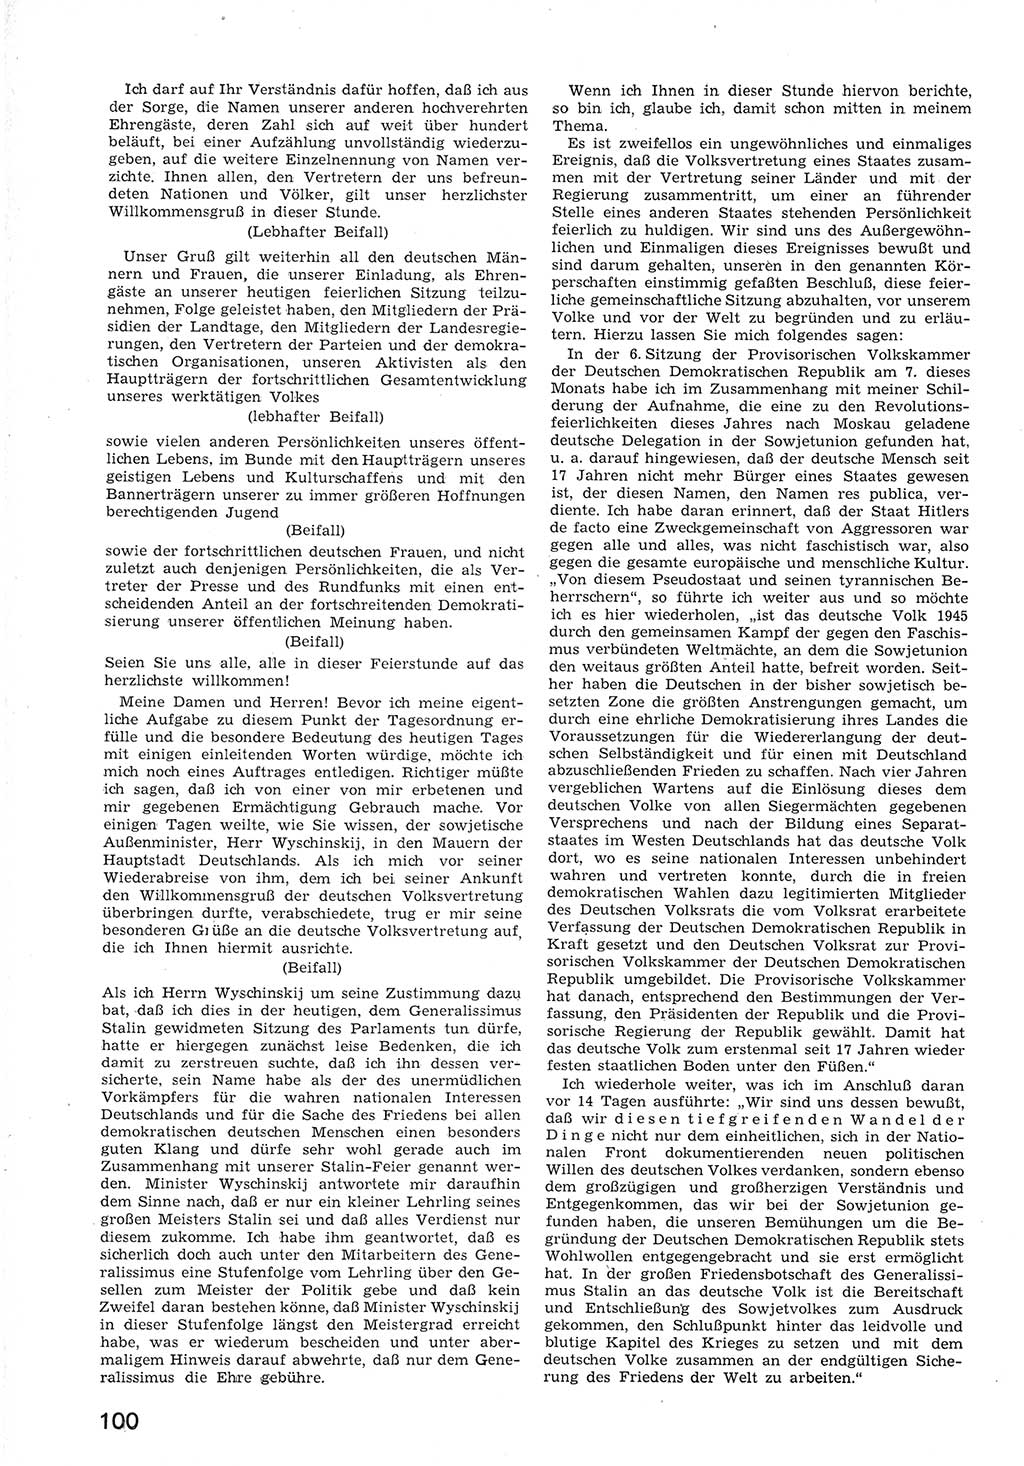 Provisorische Volkskammer (VK) der Deutschen Demokratischen Republik (DDR) 1949-1950, Dokument 112 (Prov. VK DDR 1949-1950, Dok. 112)